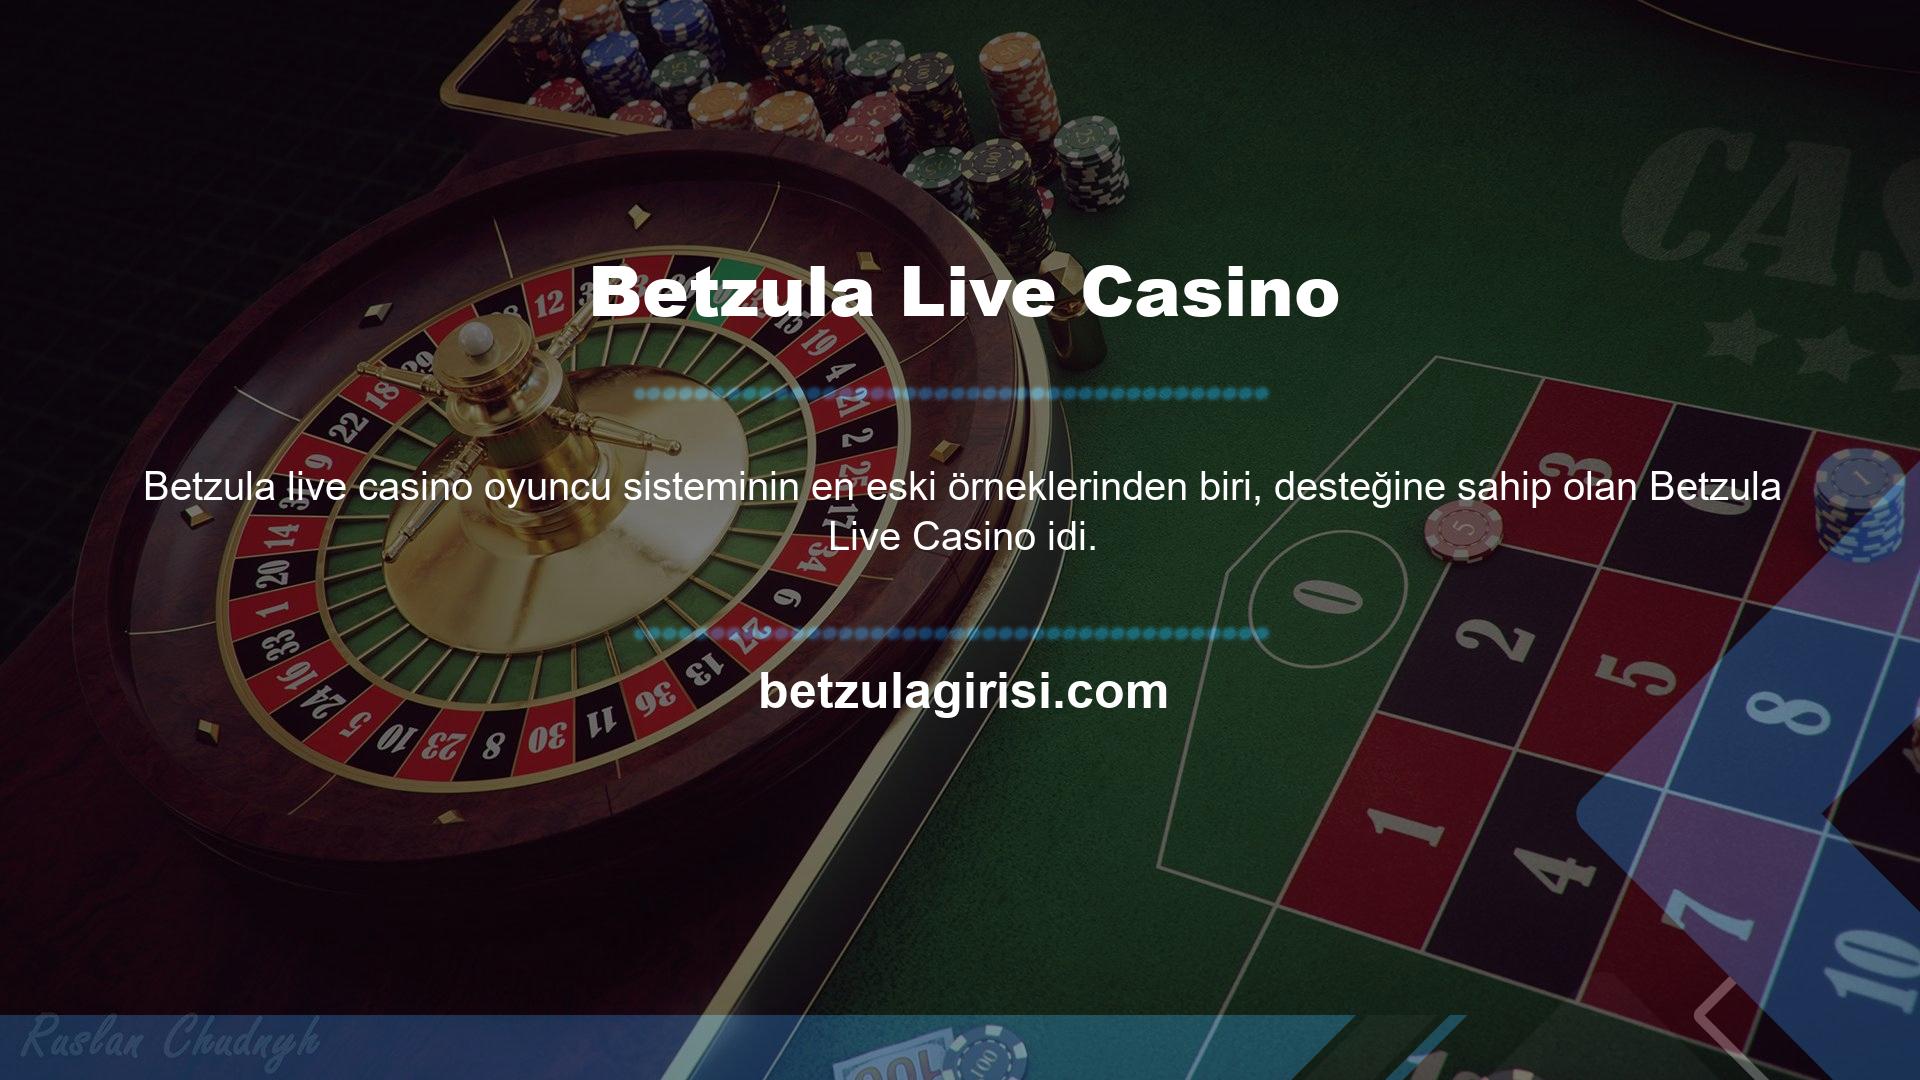 Sektör, canlı casinolar aracılığıyla Betzula tarafından desteklenmektedir